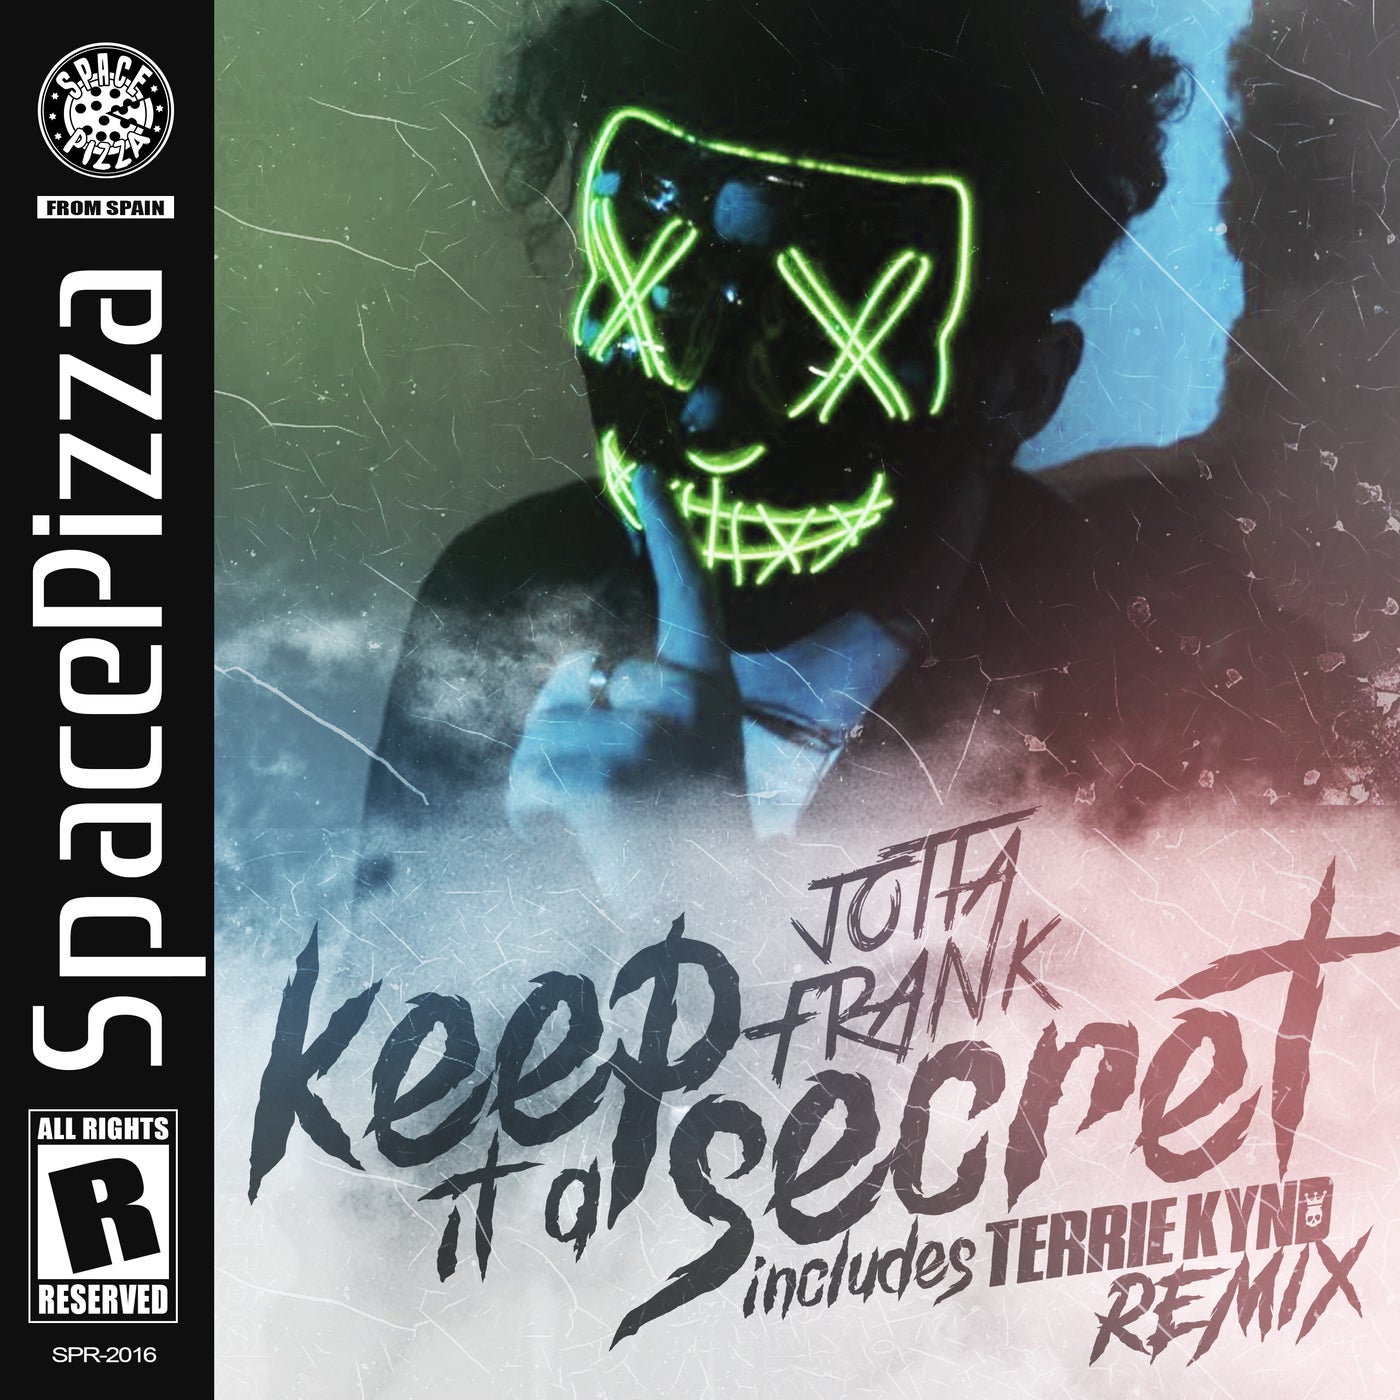 JottaFrank - Keep It A Secret (Terrie Kynd Remix)